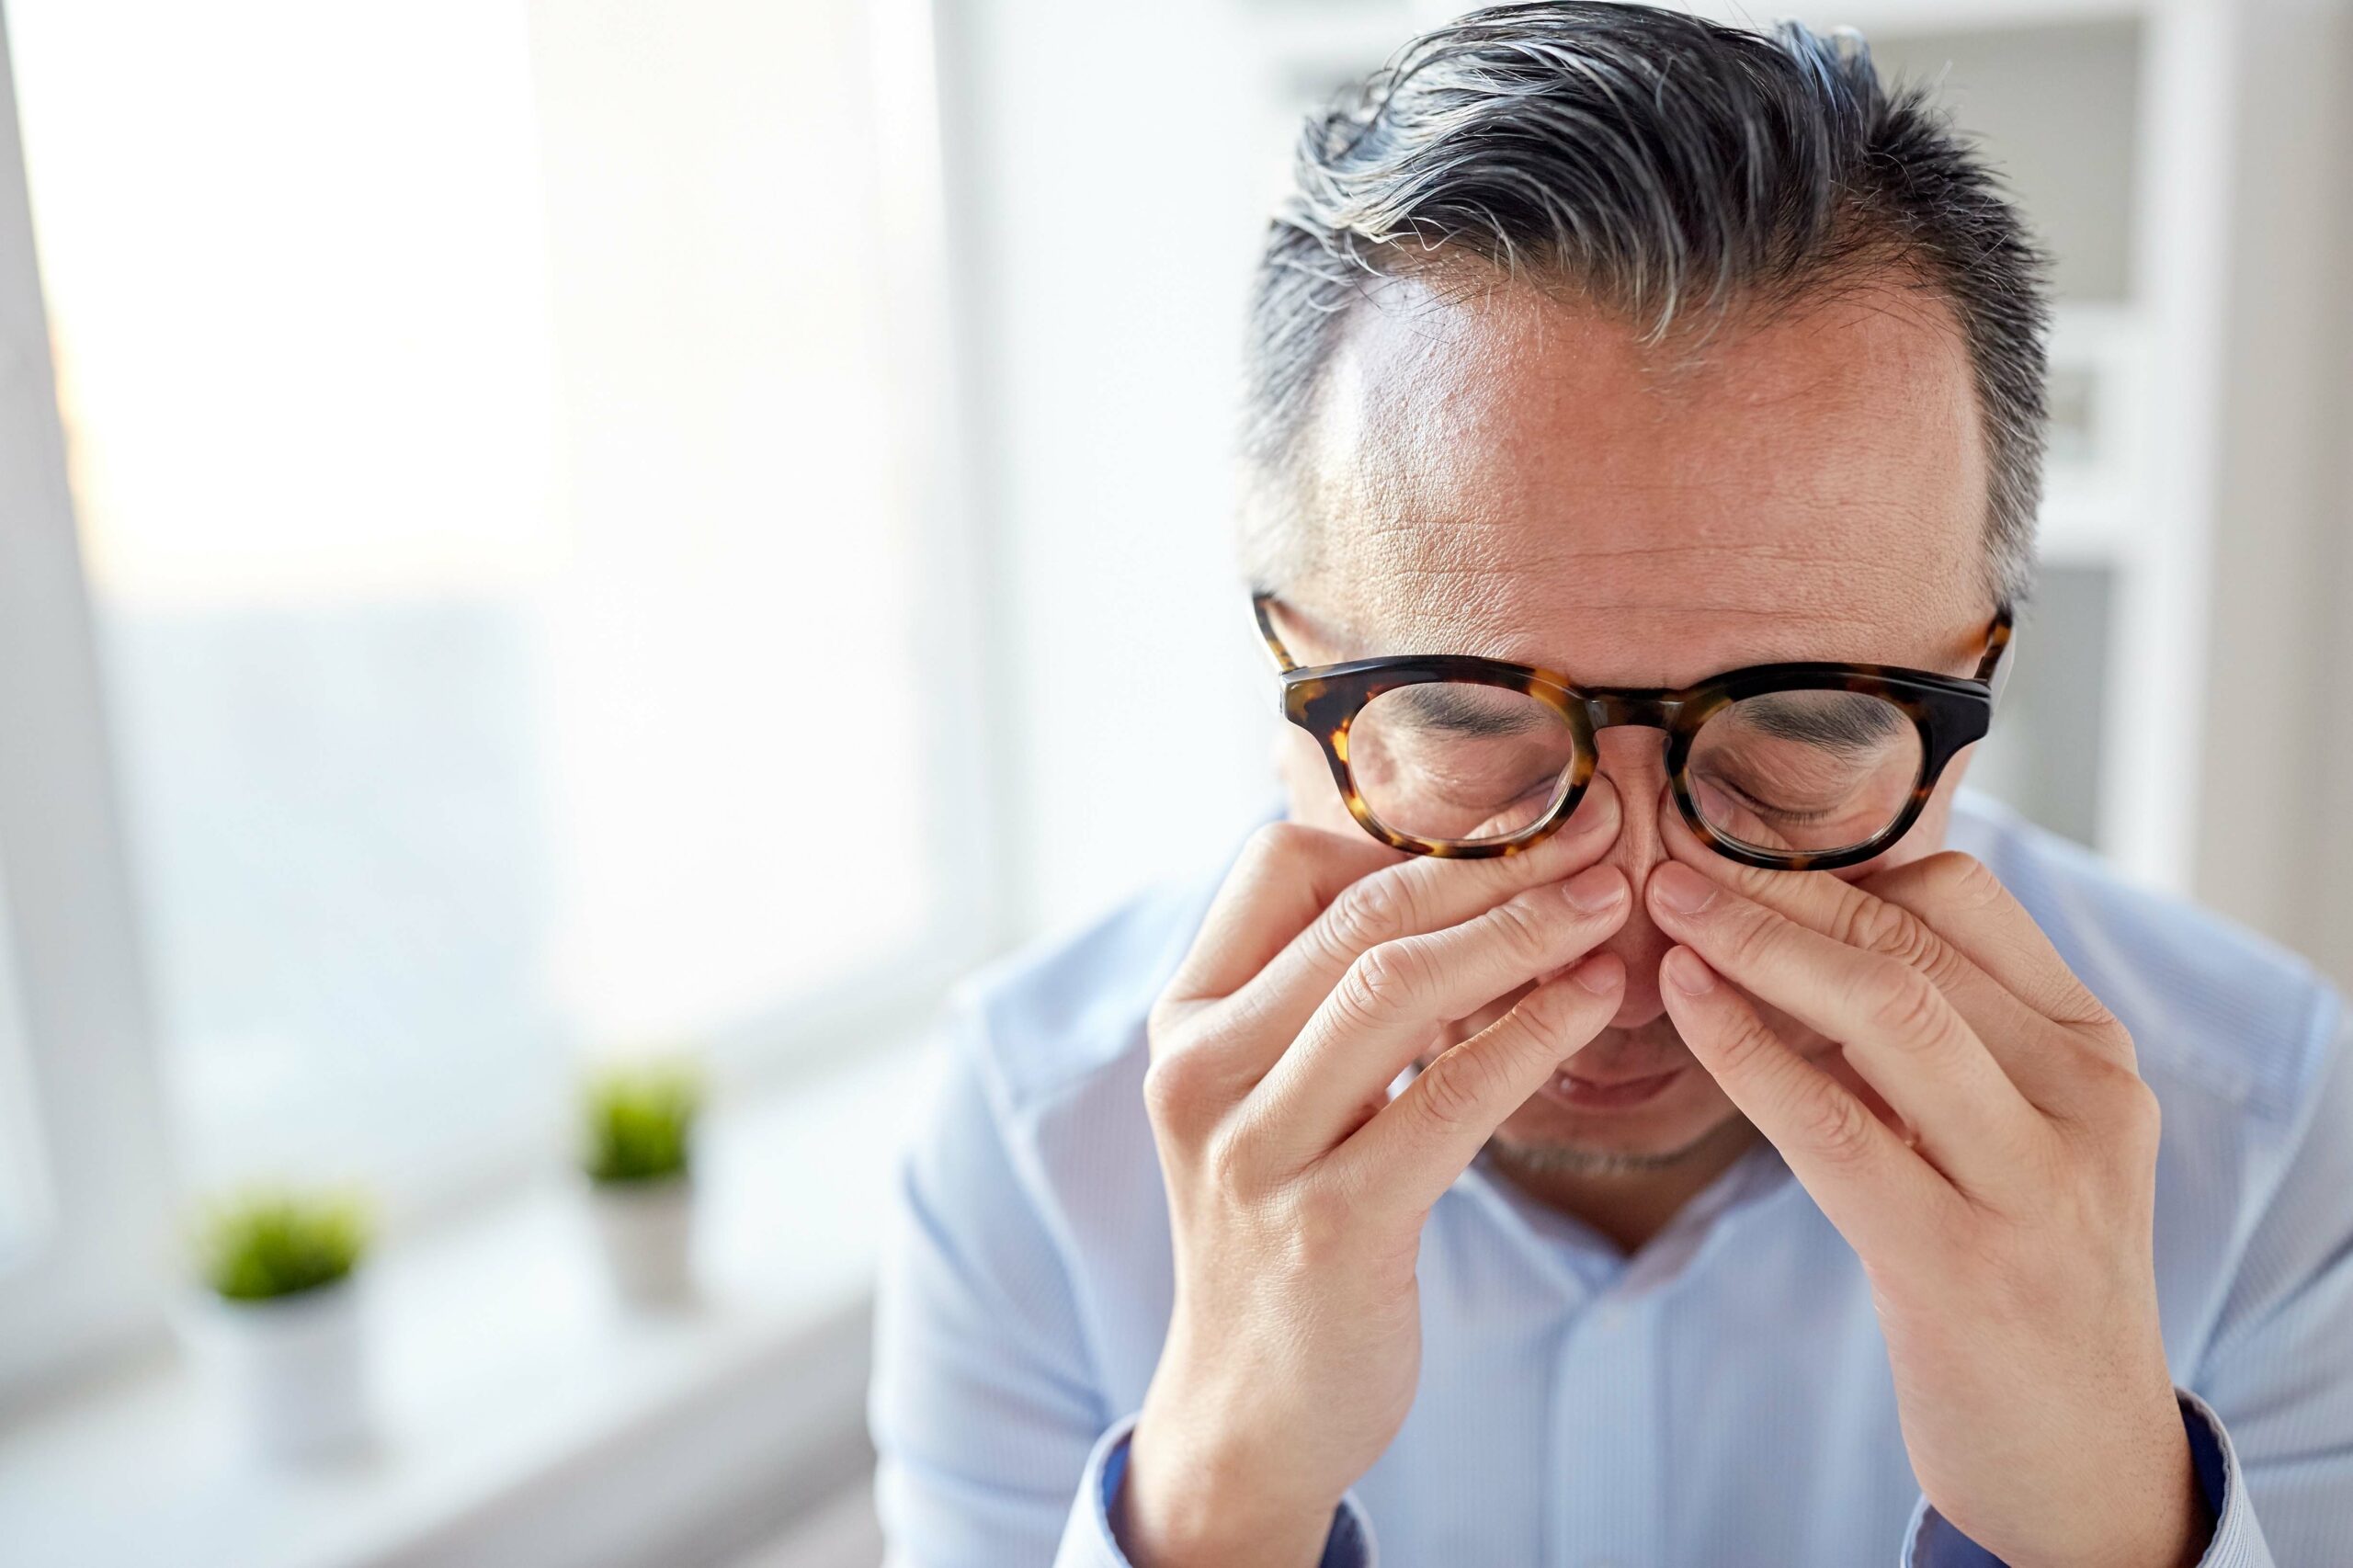 Eine ausreichende und gleichmäßige Benetzung der Augen ist für beschwerdefreies Sehen unerlässlich. Besonders häufig ist die zu Trockenheit neigende Entzündung von Horn- und Bindehaut im mittleren Lebensalter. Was können die Ursachen sein?